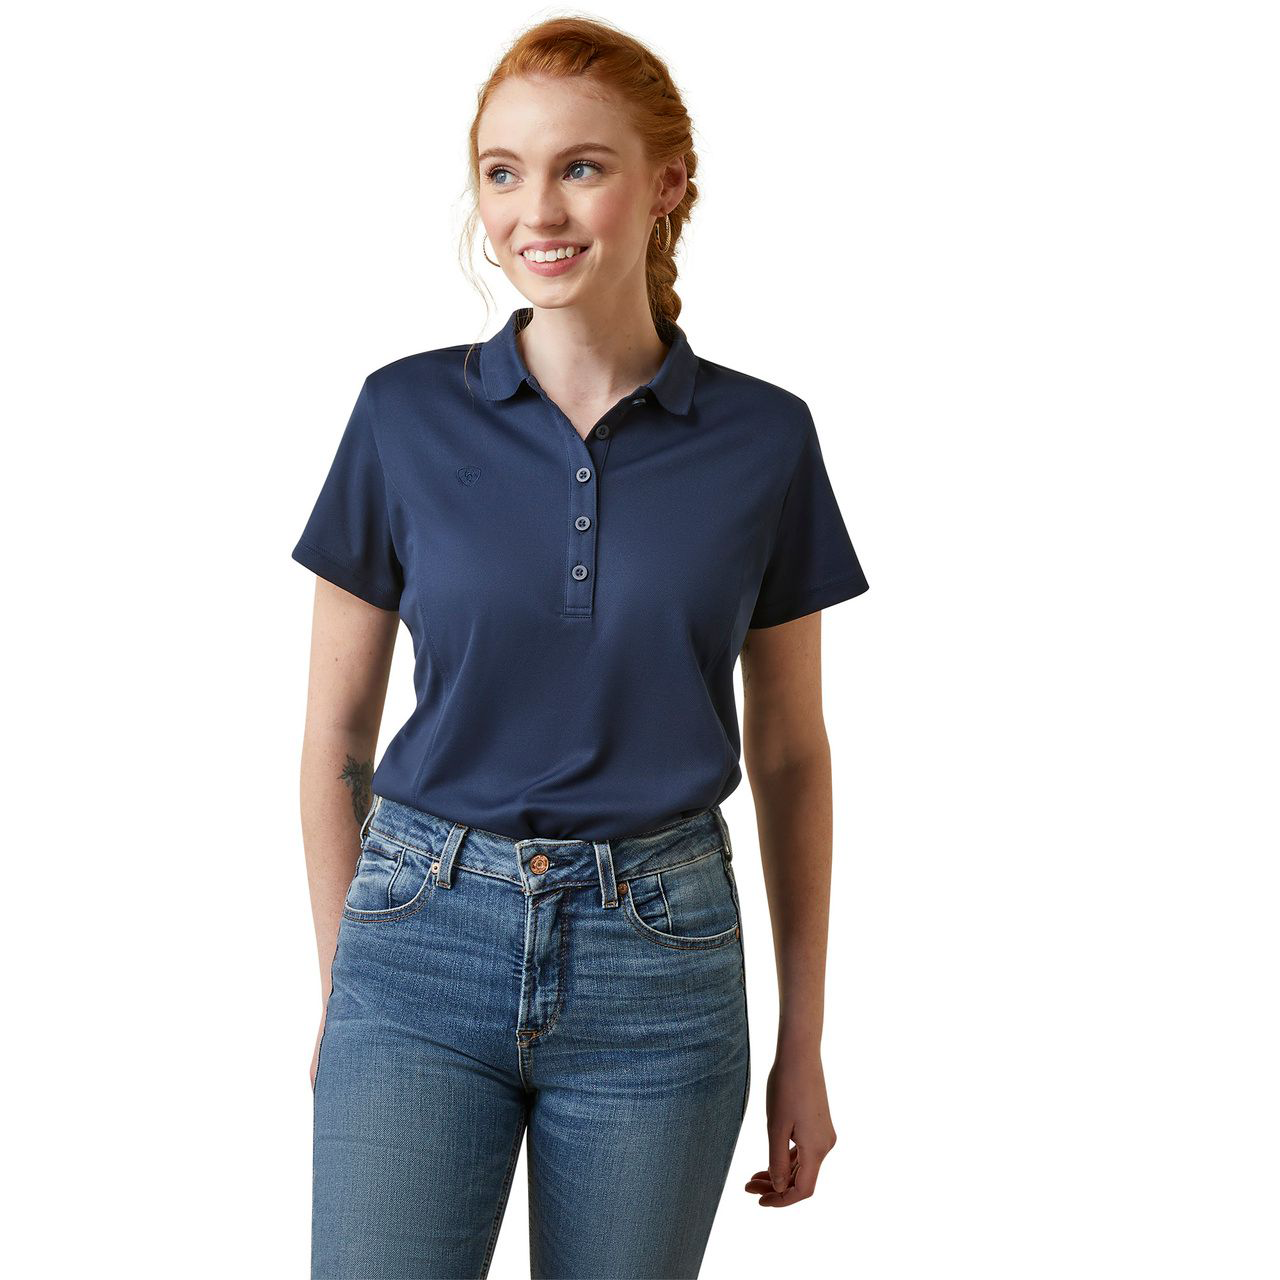 Ariat TEK Short-Sleeve Polo for Ladies - Navy - M